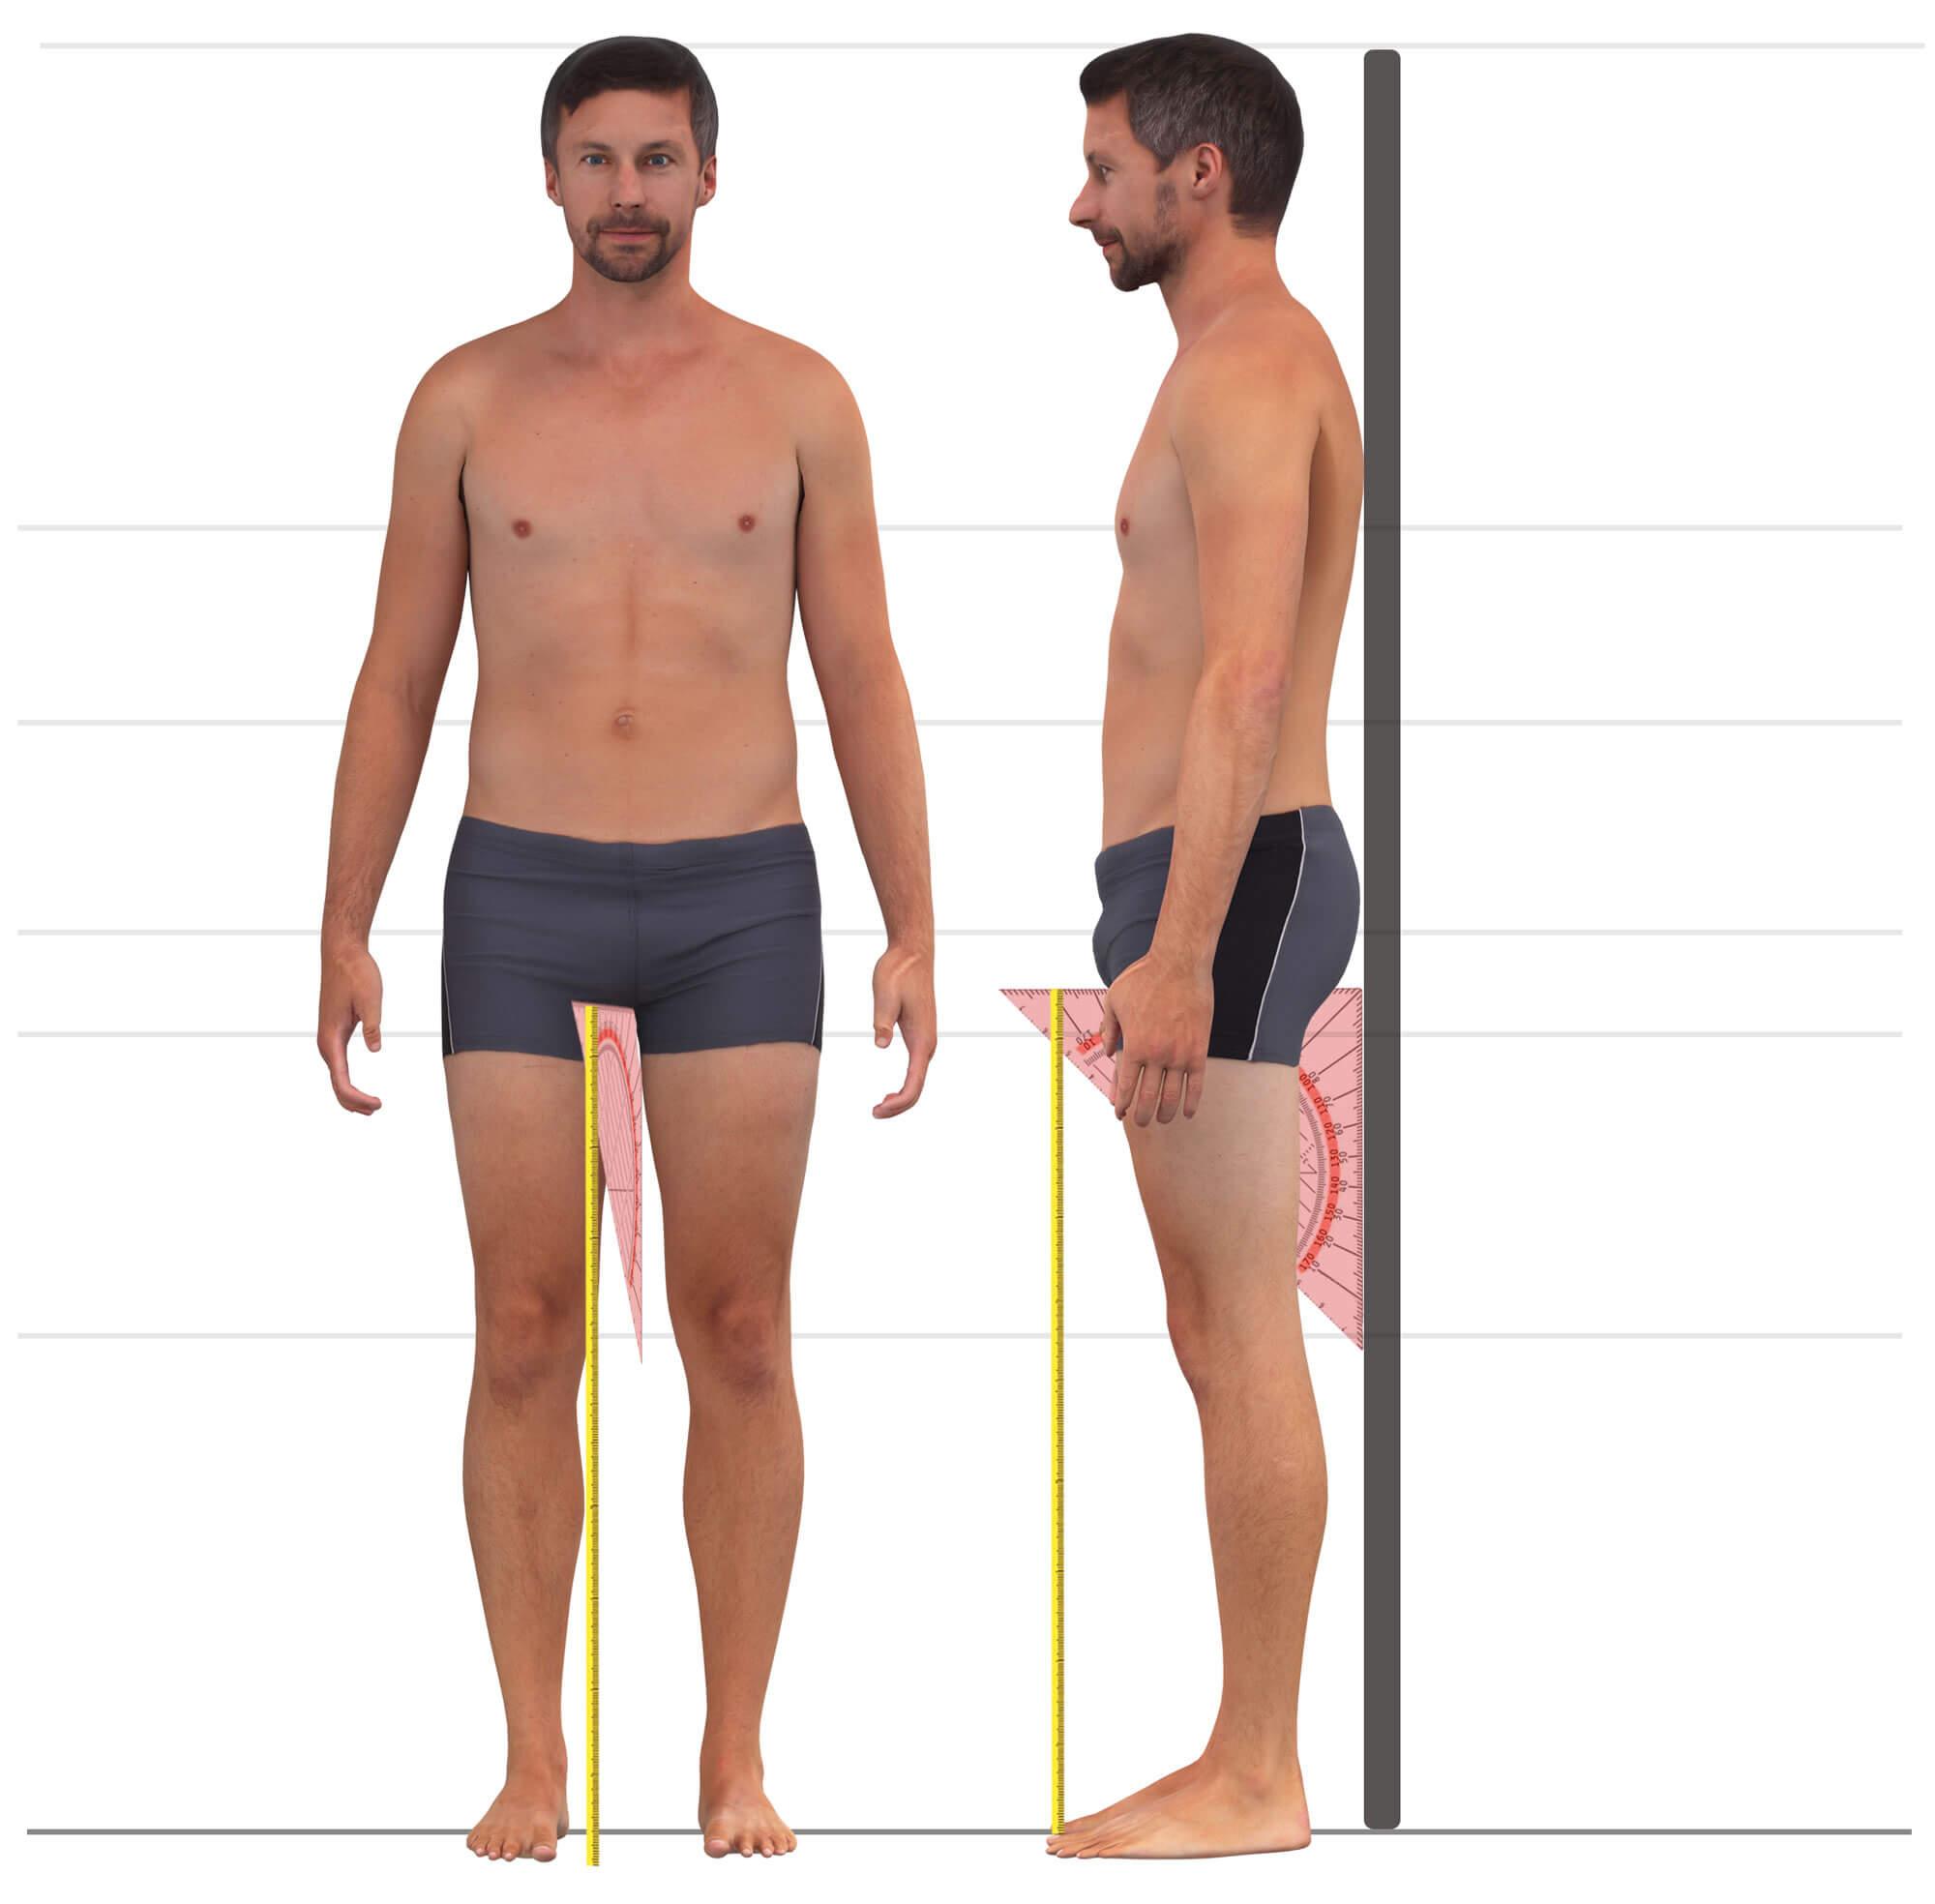 Das Bild zeigt das Maßnehmen der inneren Beinlänge für Männerhosen.